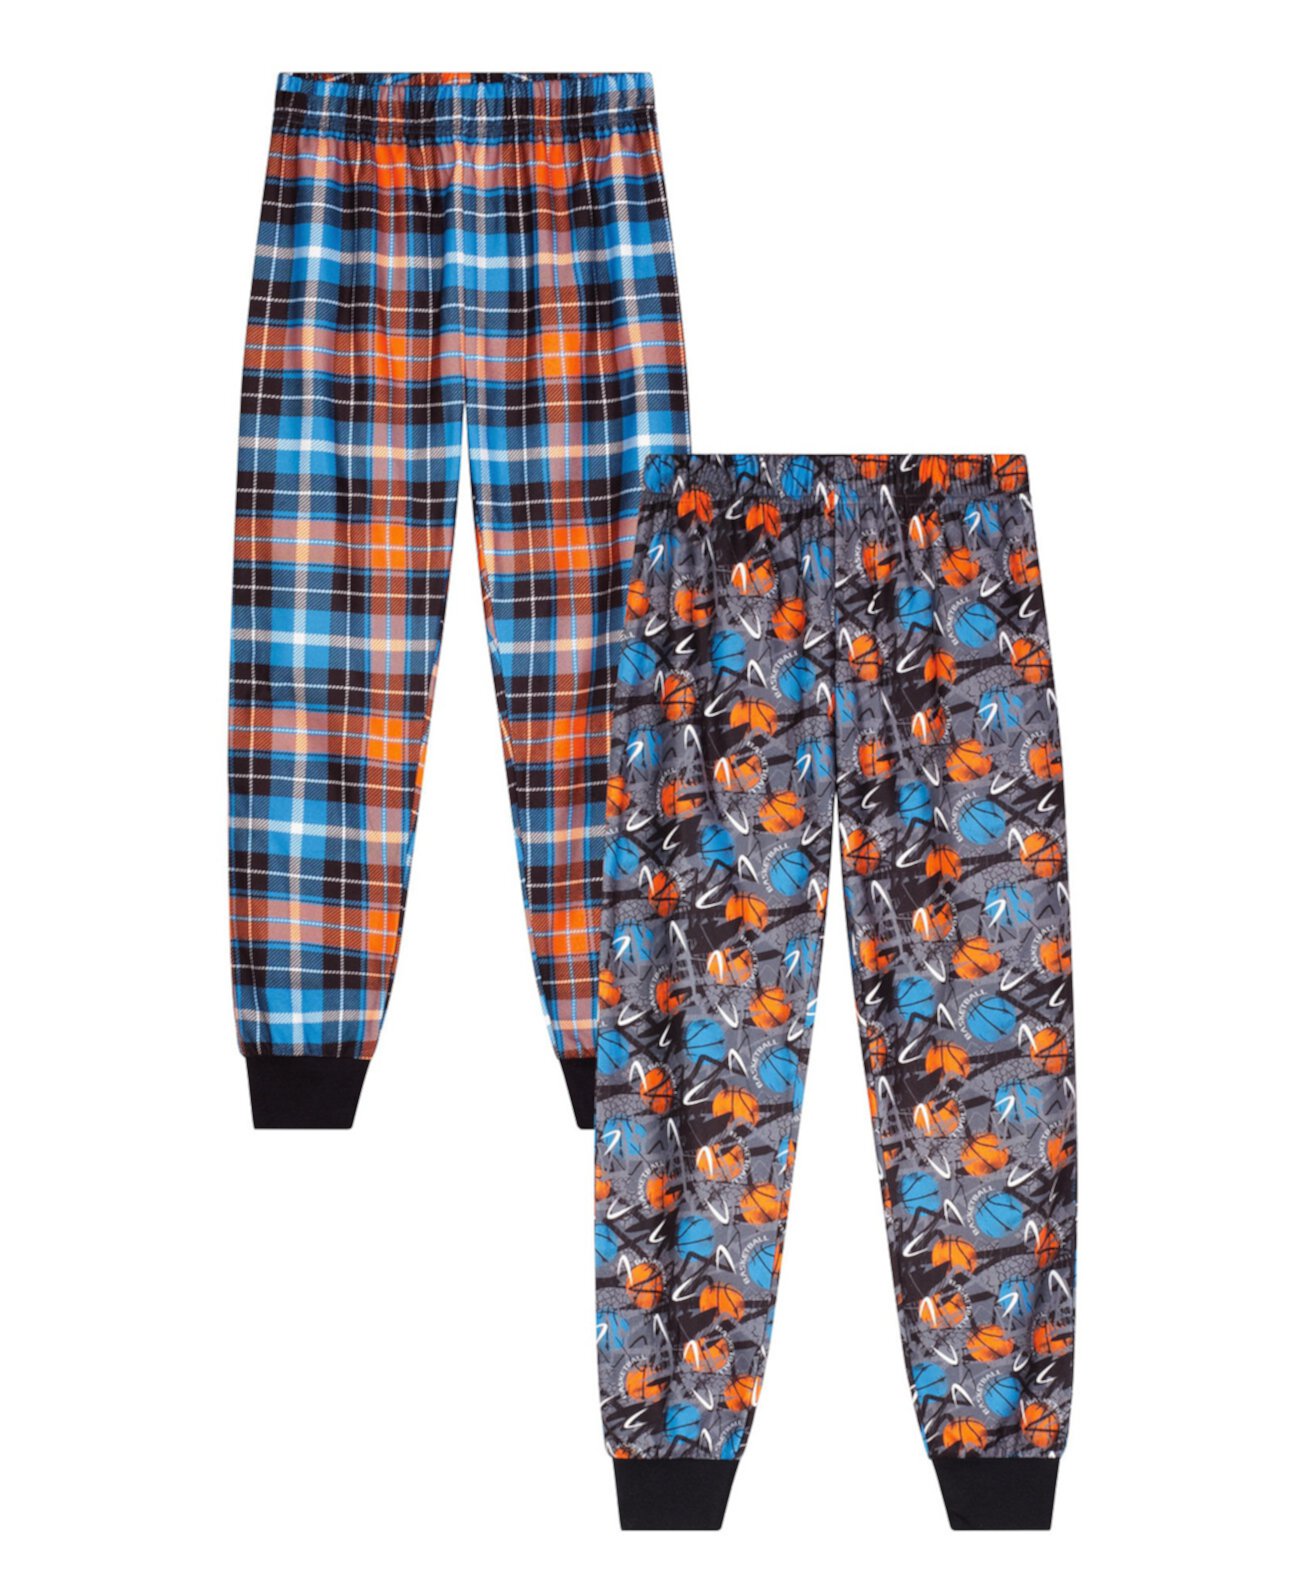 Комплект из 2 пижамных штанов Big Boys, 2 шт. Max & Olivia